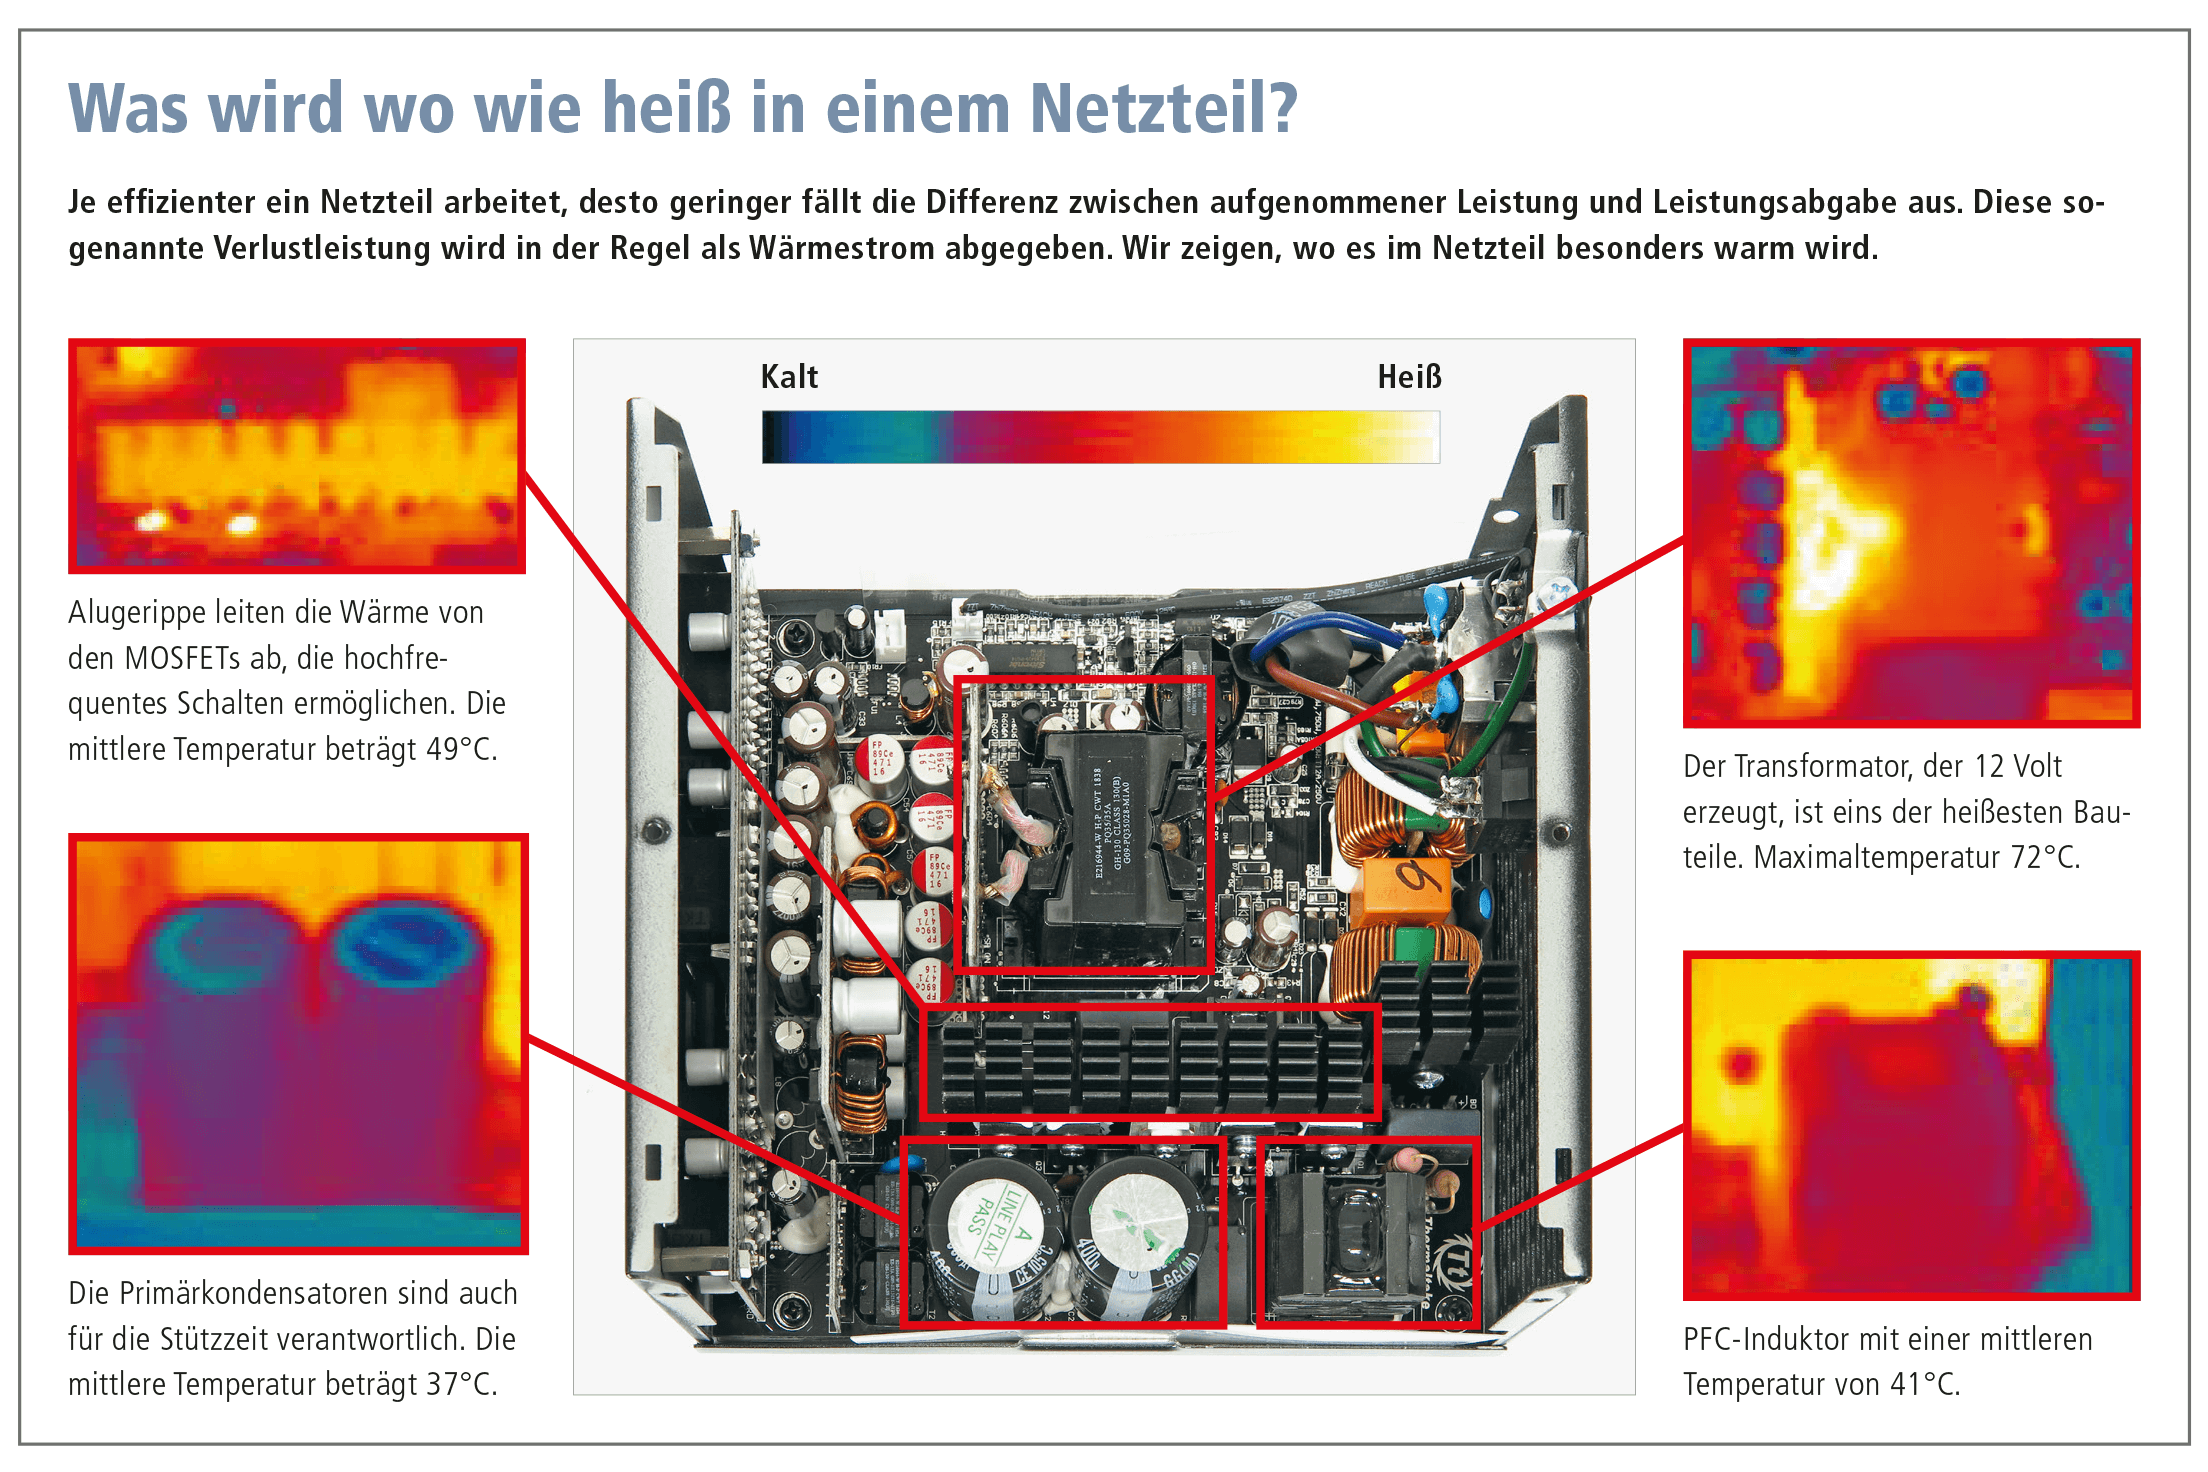 Schaubild zur Hitzeentwicklung in einem PC-Netzteil